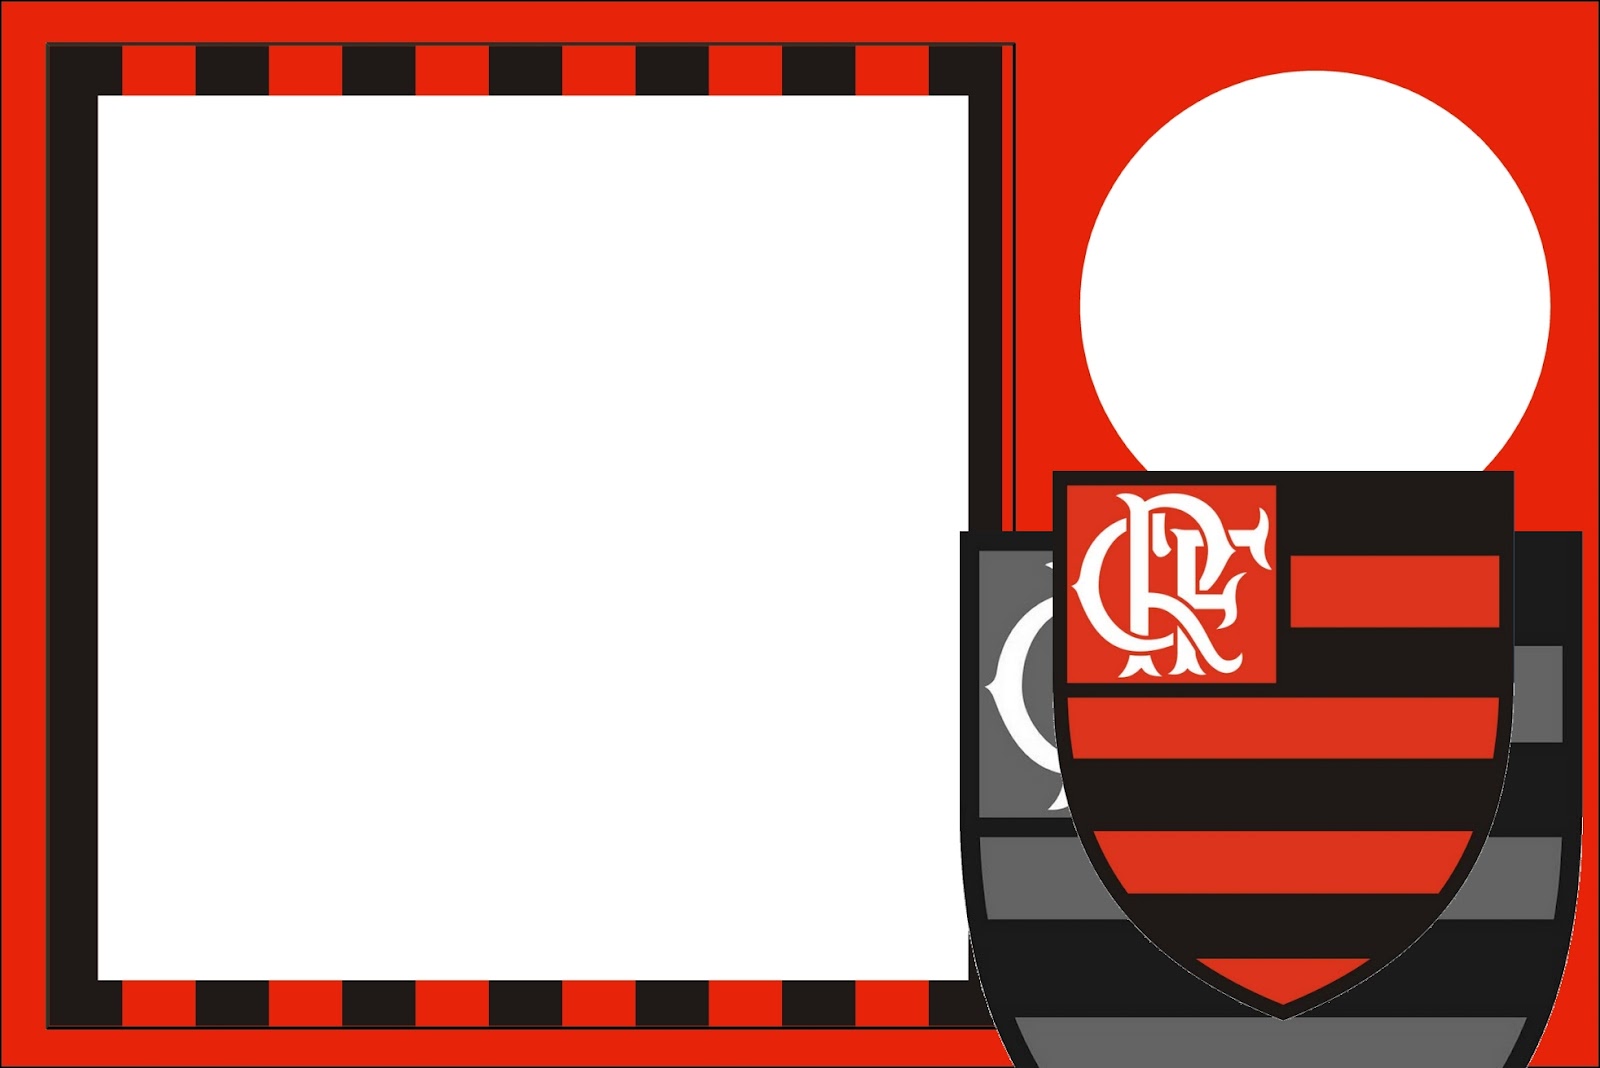 Criar convite de aniversário - Convite Futebol Flamengo Rosa